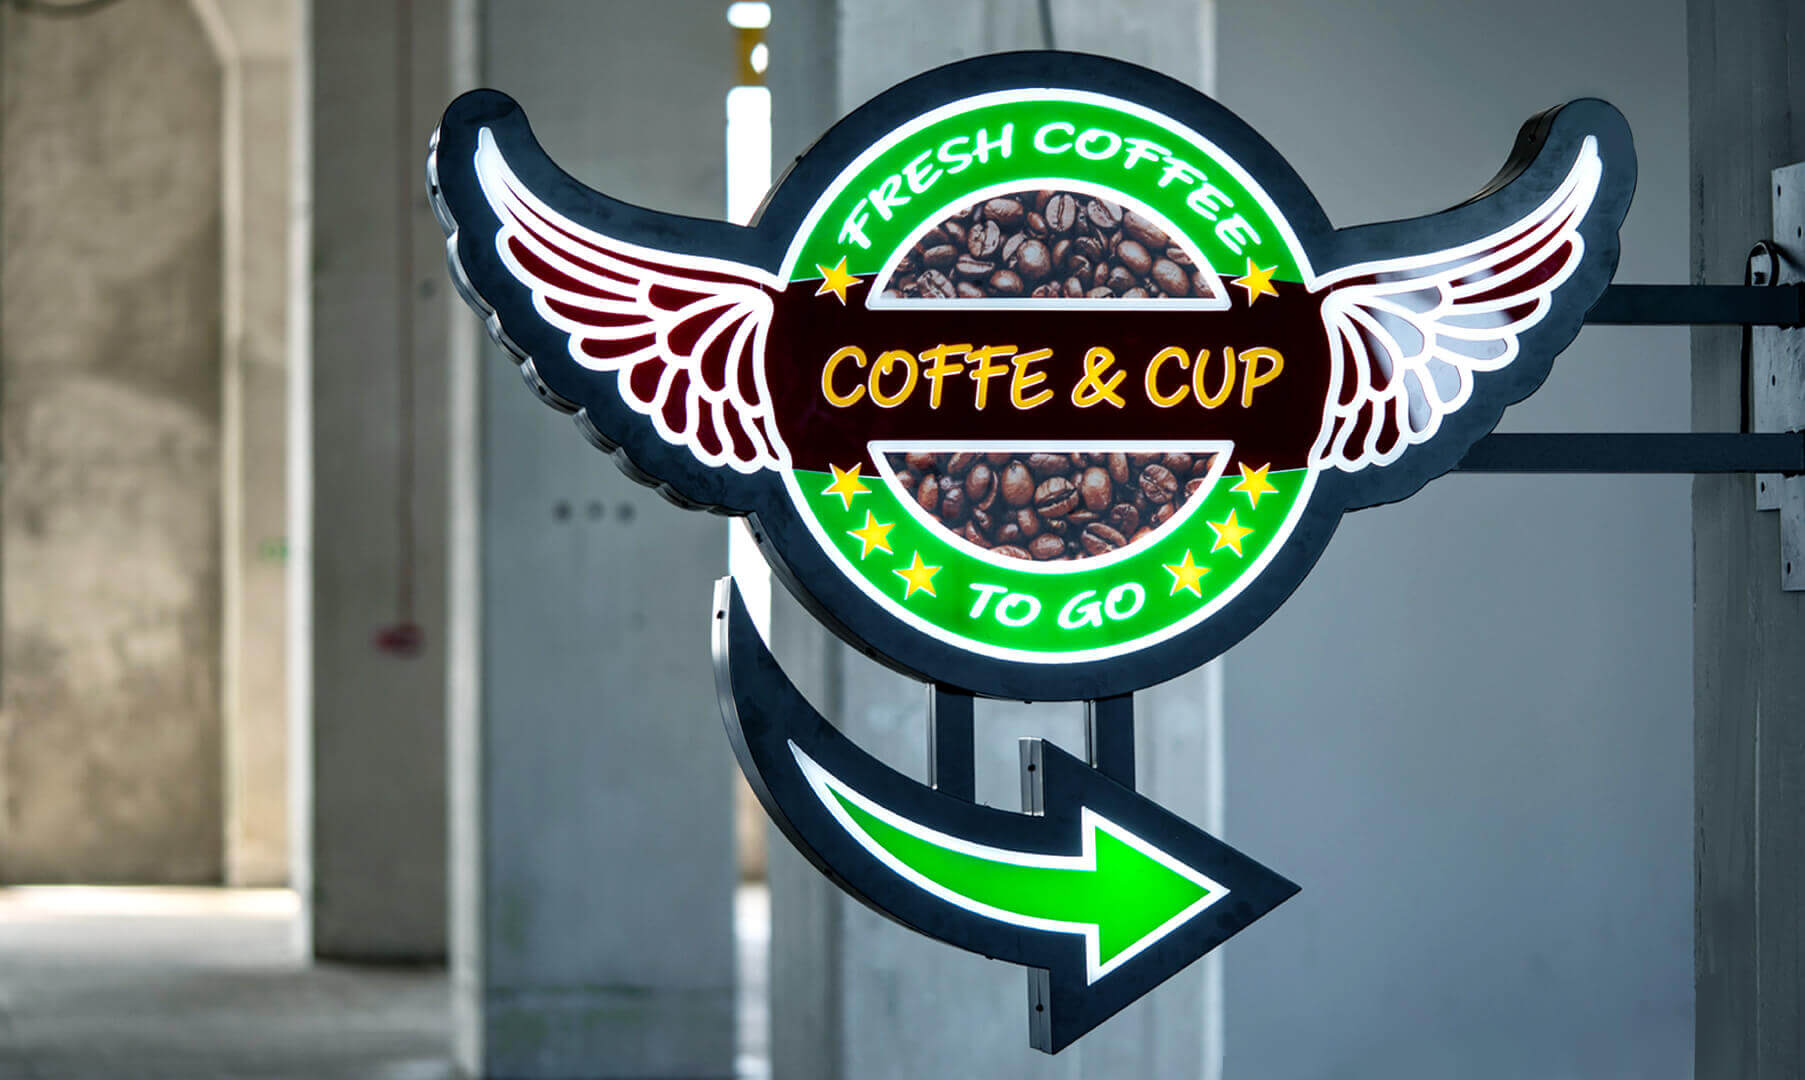 coffe-semafor - coffe-semafor-led-publicidad-perpendicular-a-la-pared